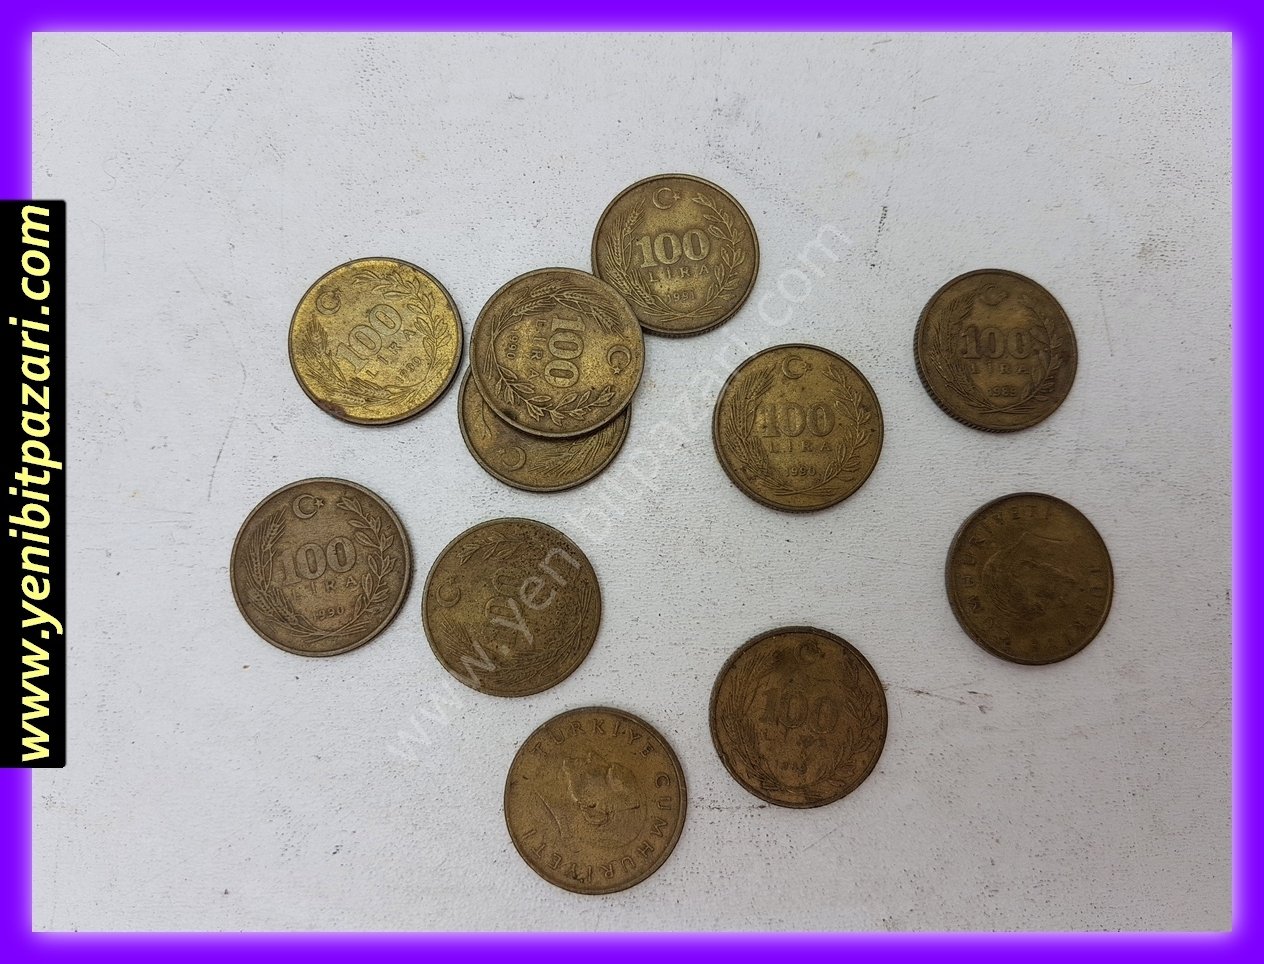 100 yüz türk lirası tl lira 1989 1990 1991 orjinal antika tarihi eski para çeşitleri metal madeni paralar kolesksiyonluk nostalji bozuk para